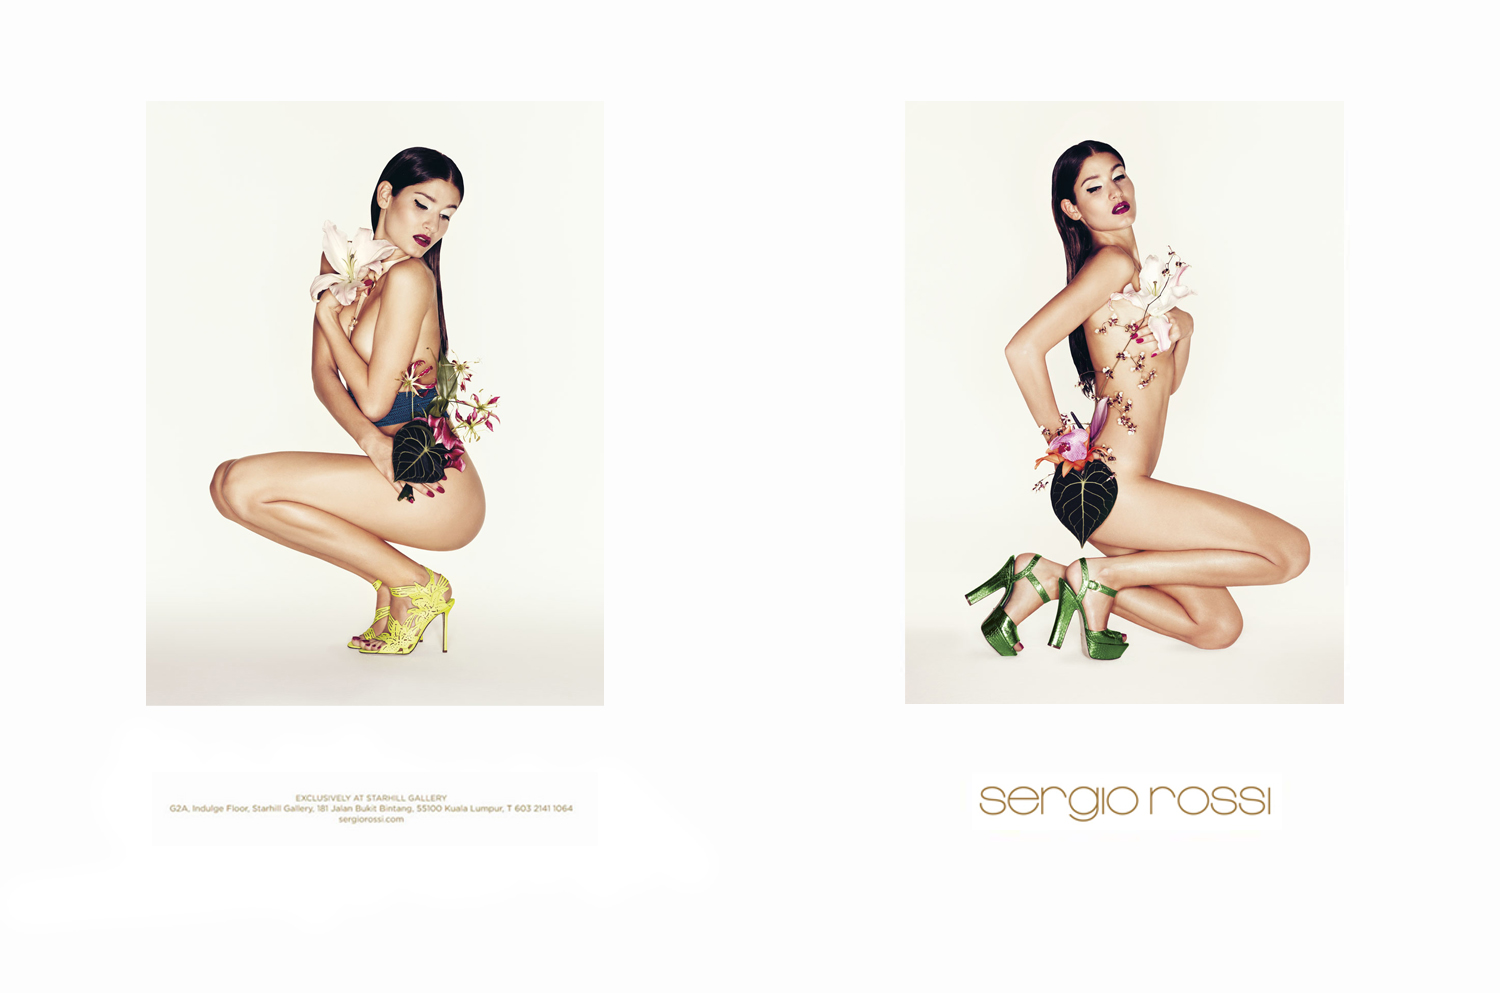 Sergio Rossi SS 2012 Campaign | Johan Sandberg | Sergio Rossi | Numerique Retouch Photo Retouching Studio